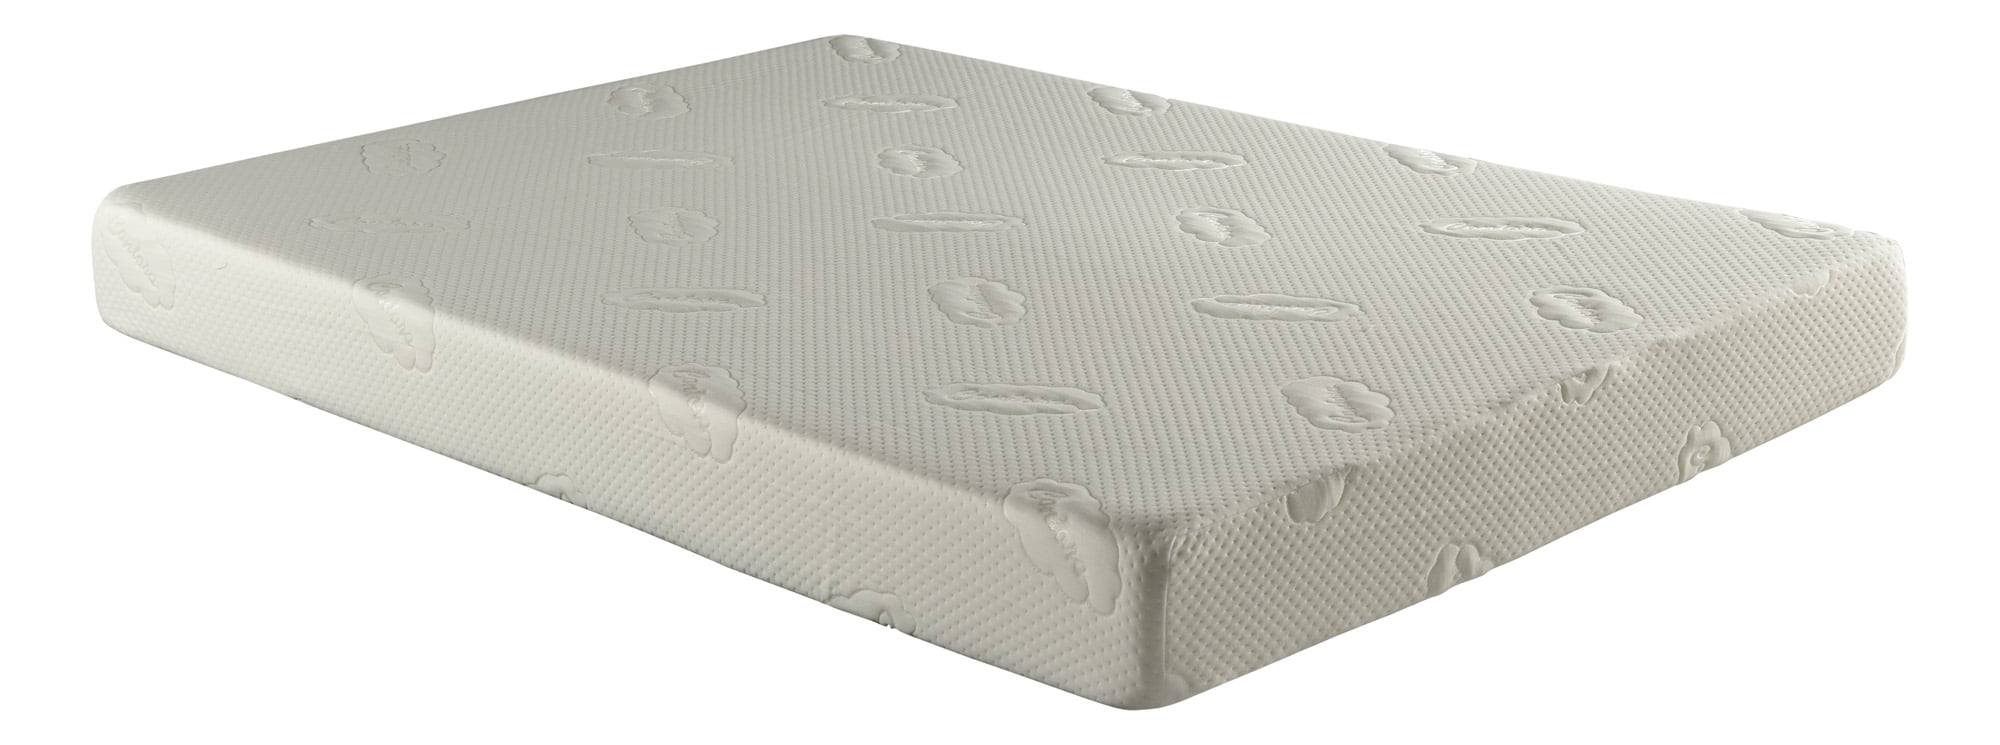 memery foam mattress walmart